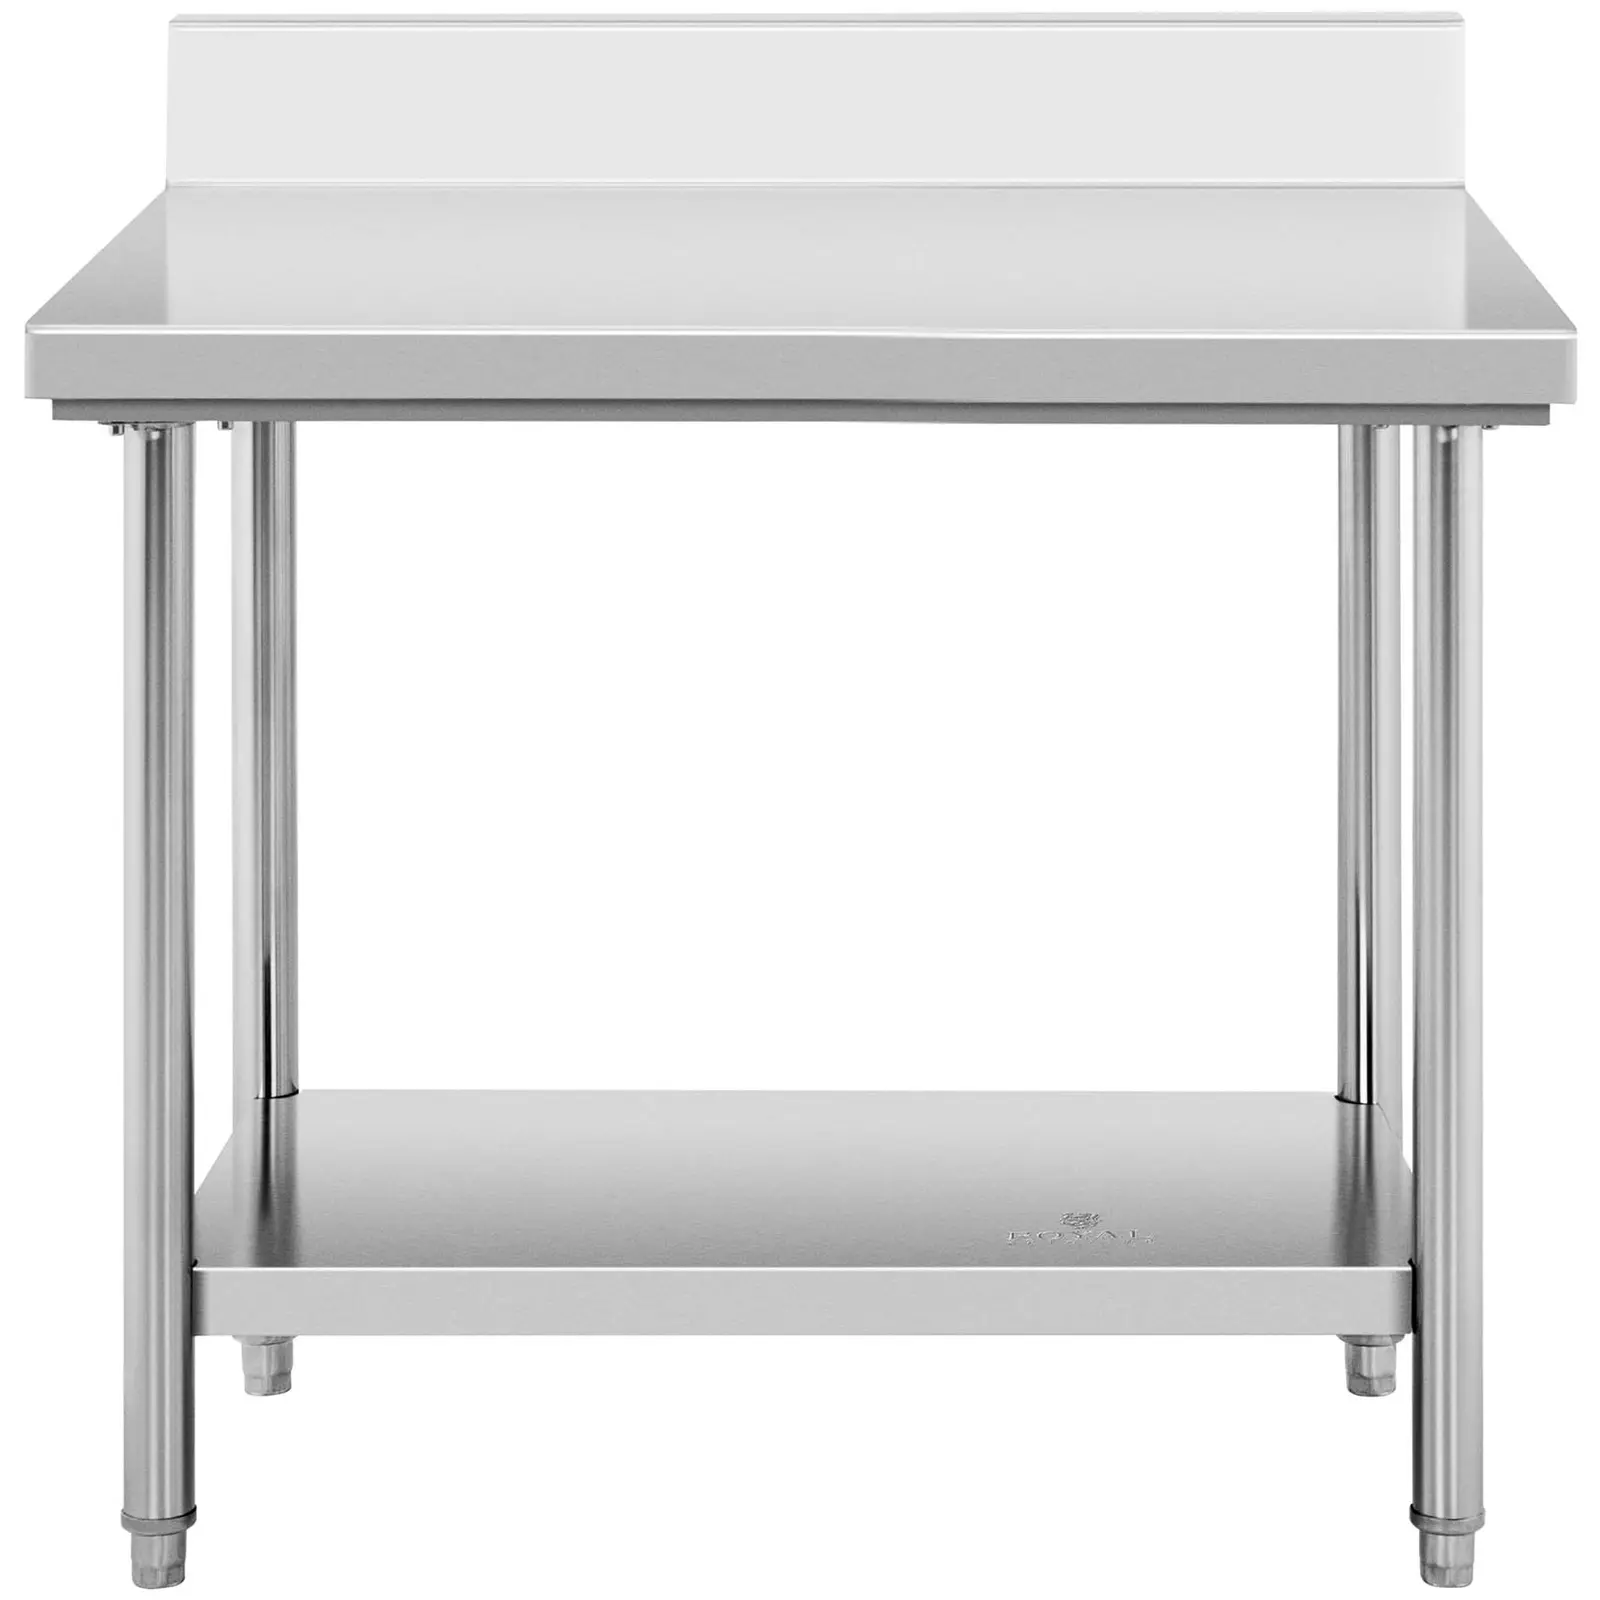 Table de travail inox avec dosseret - 100 x 70 cm - Capacité de 95 kg